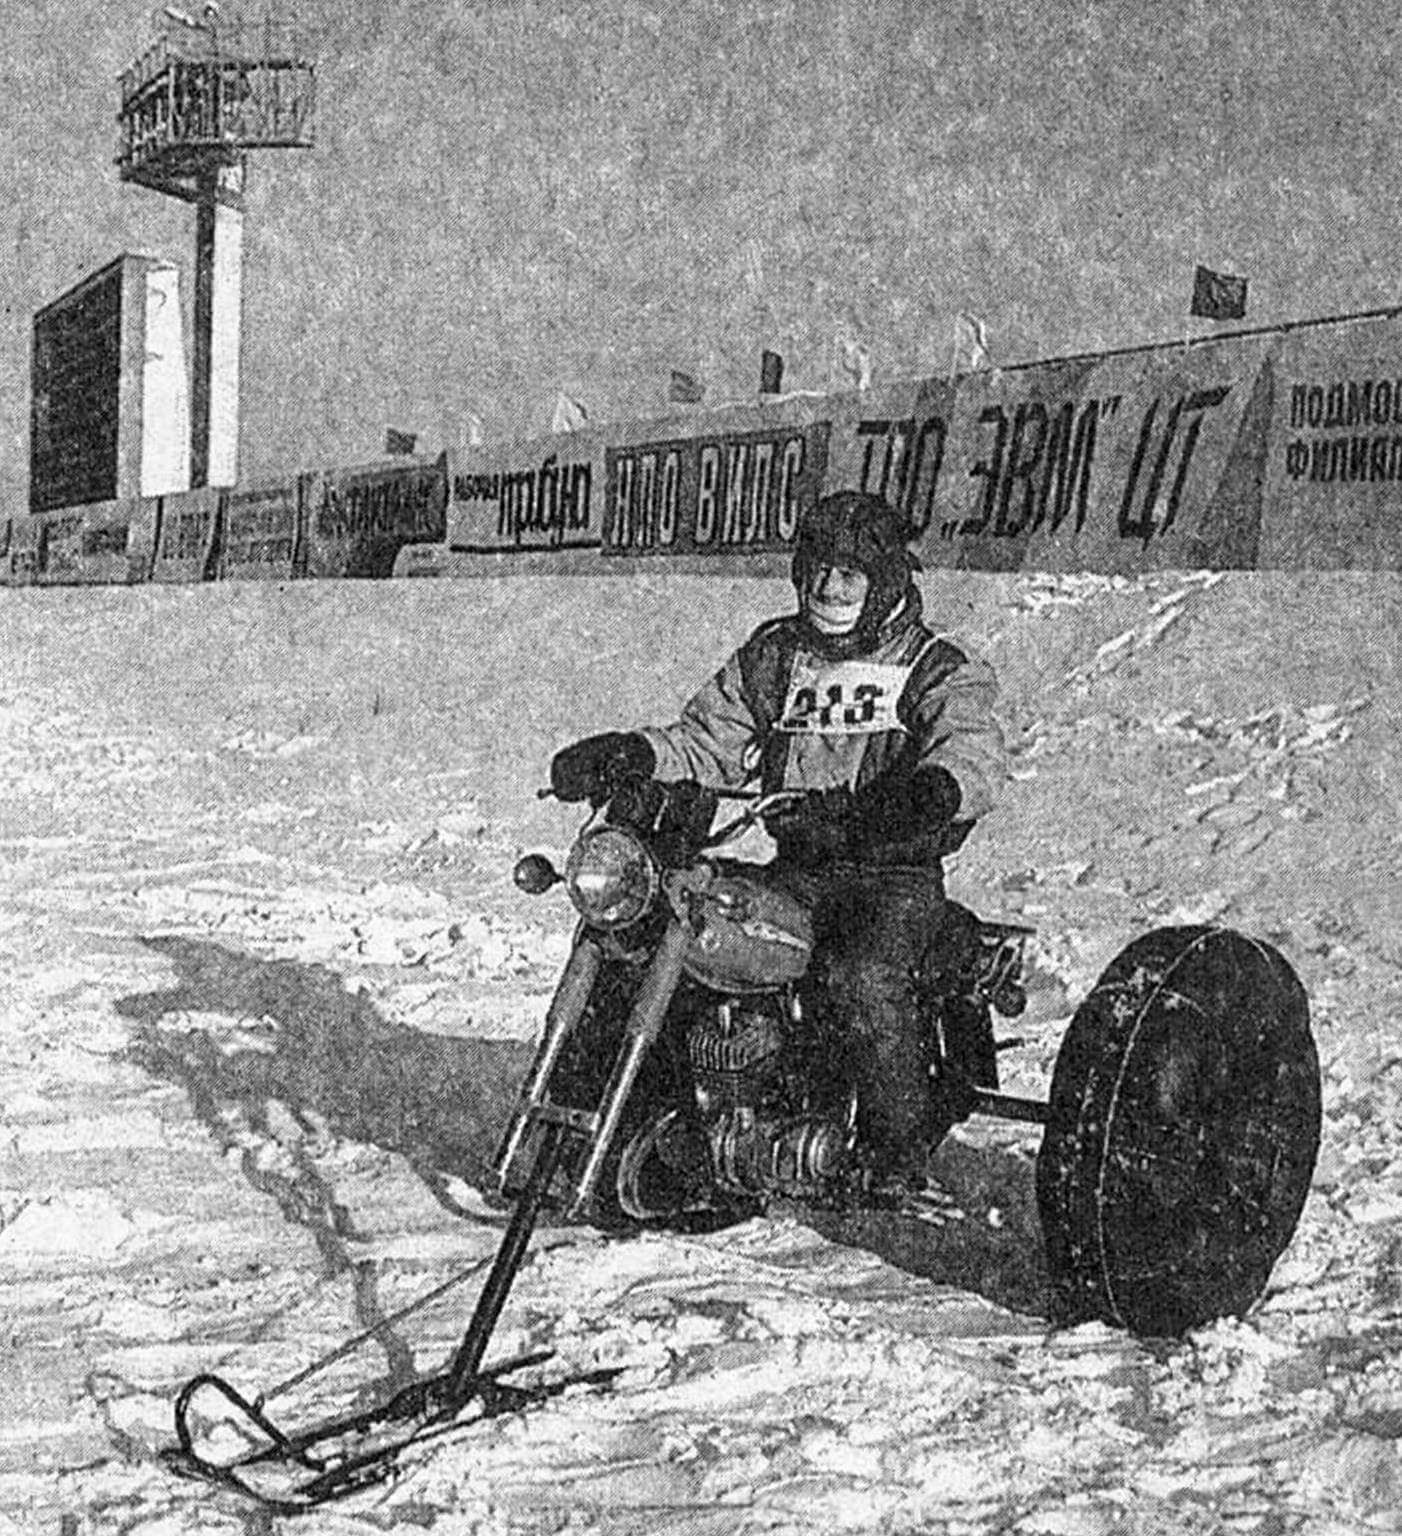 Базой этого колесно-лыжного снегохода, созданного минчанином А. Борисевичем, стал легкий мотоцикл ММВЗ-3.11211.